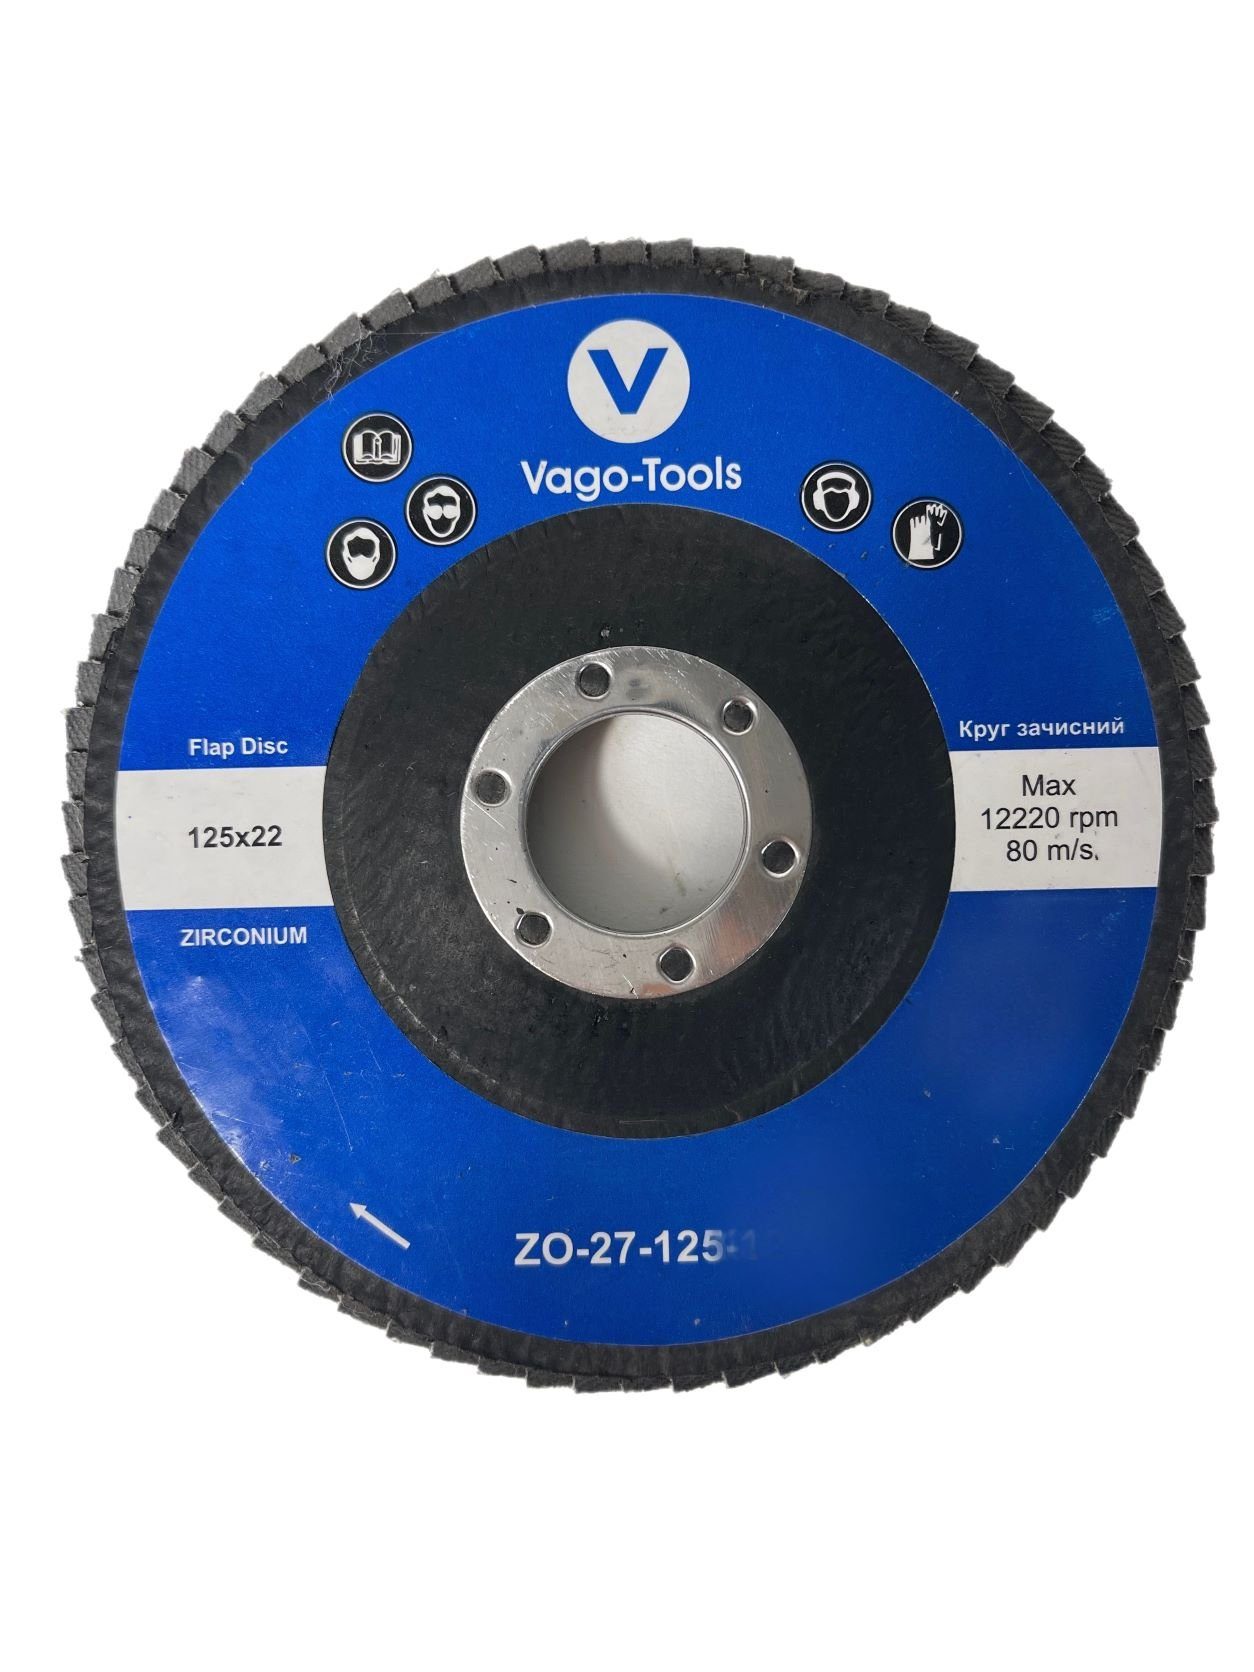 VaGo-Tools Schleifscheibe Fächerschleifscheiben 125mm P100 flach Blau 5x, (Packung)